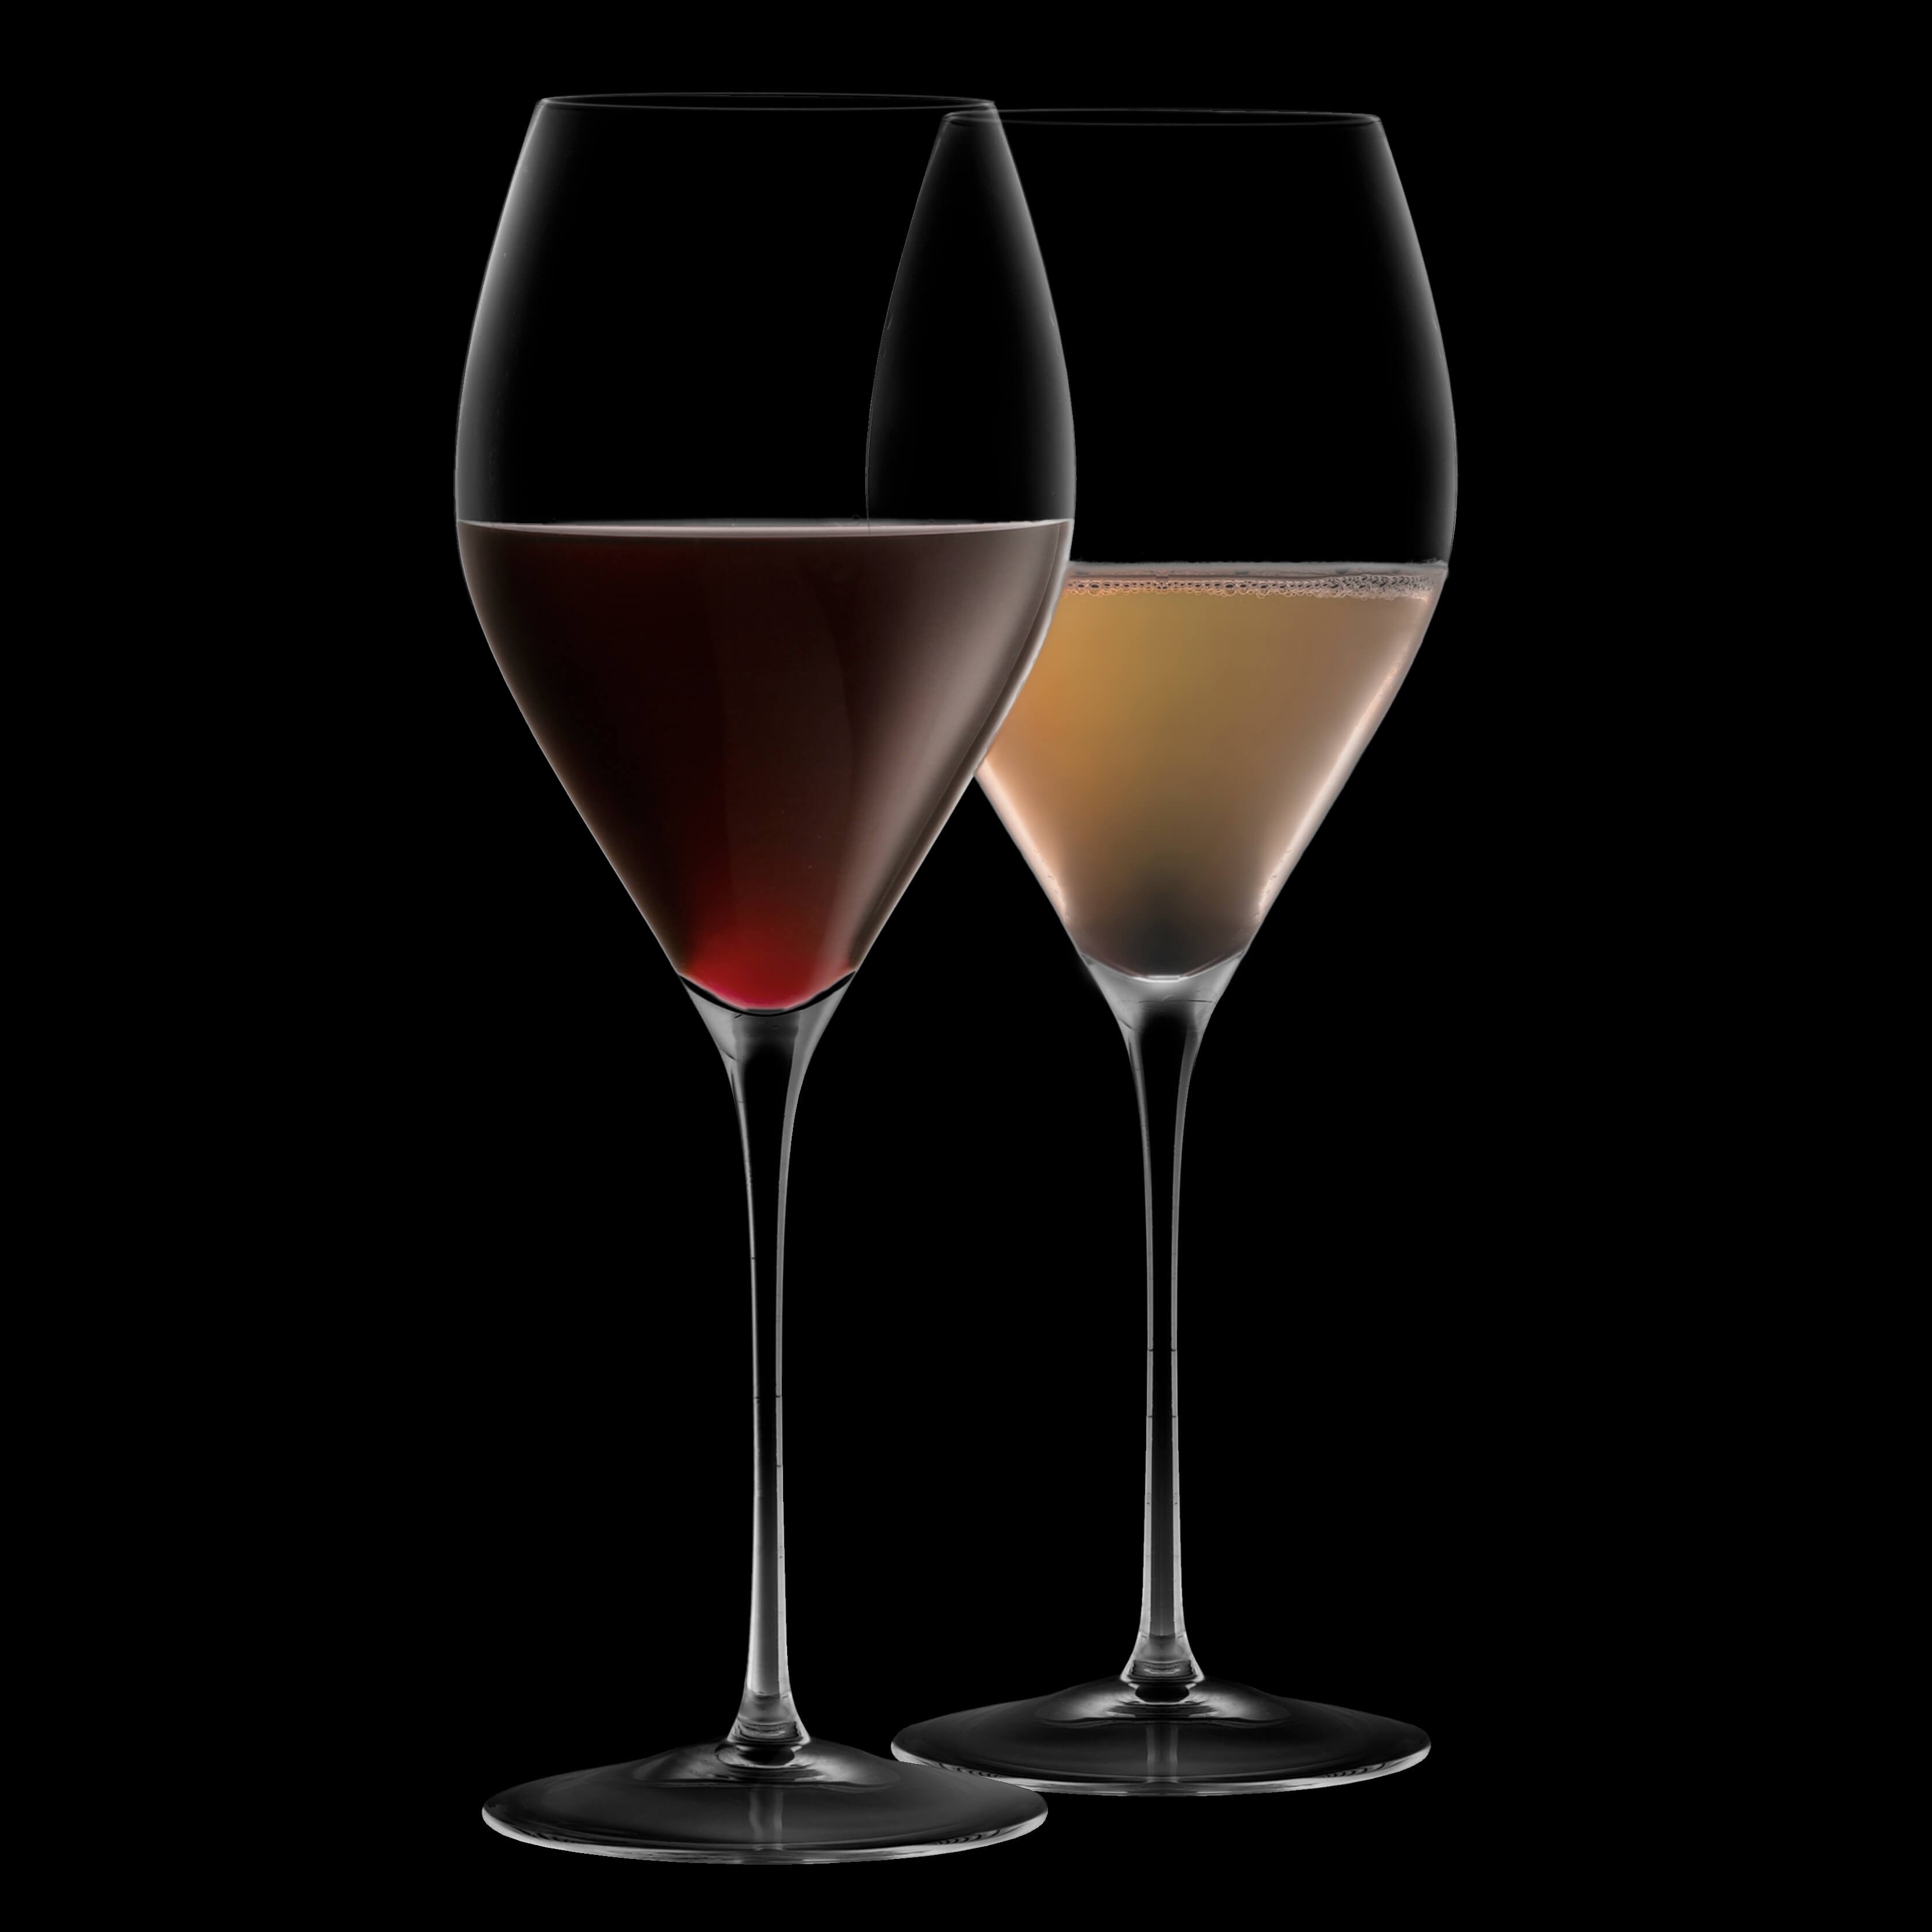 joyjolt wine glasses